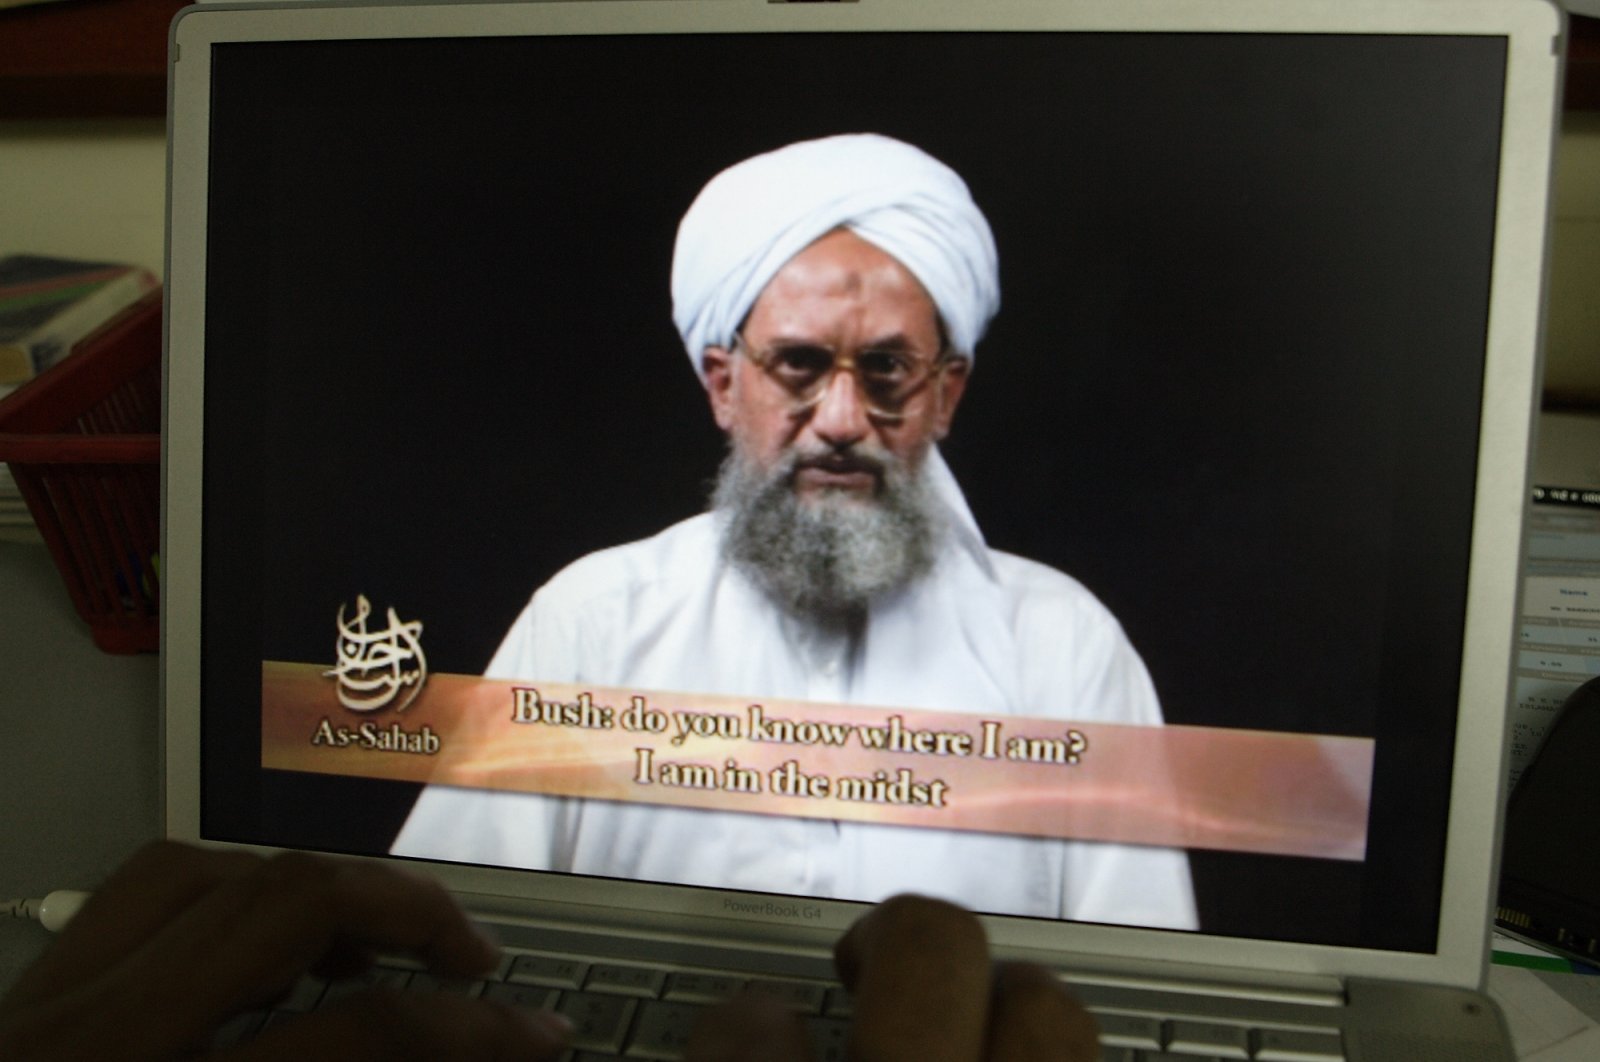 Pemimpin Al-Qaida al-Zawahiri tewas dalam operasi CIA di Afghanistan